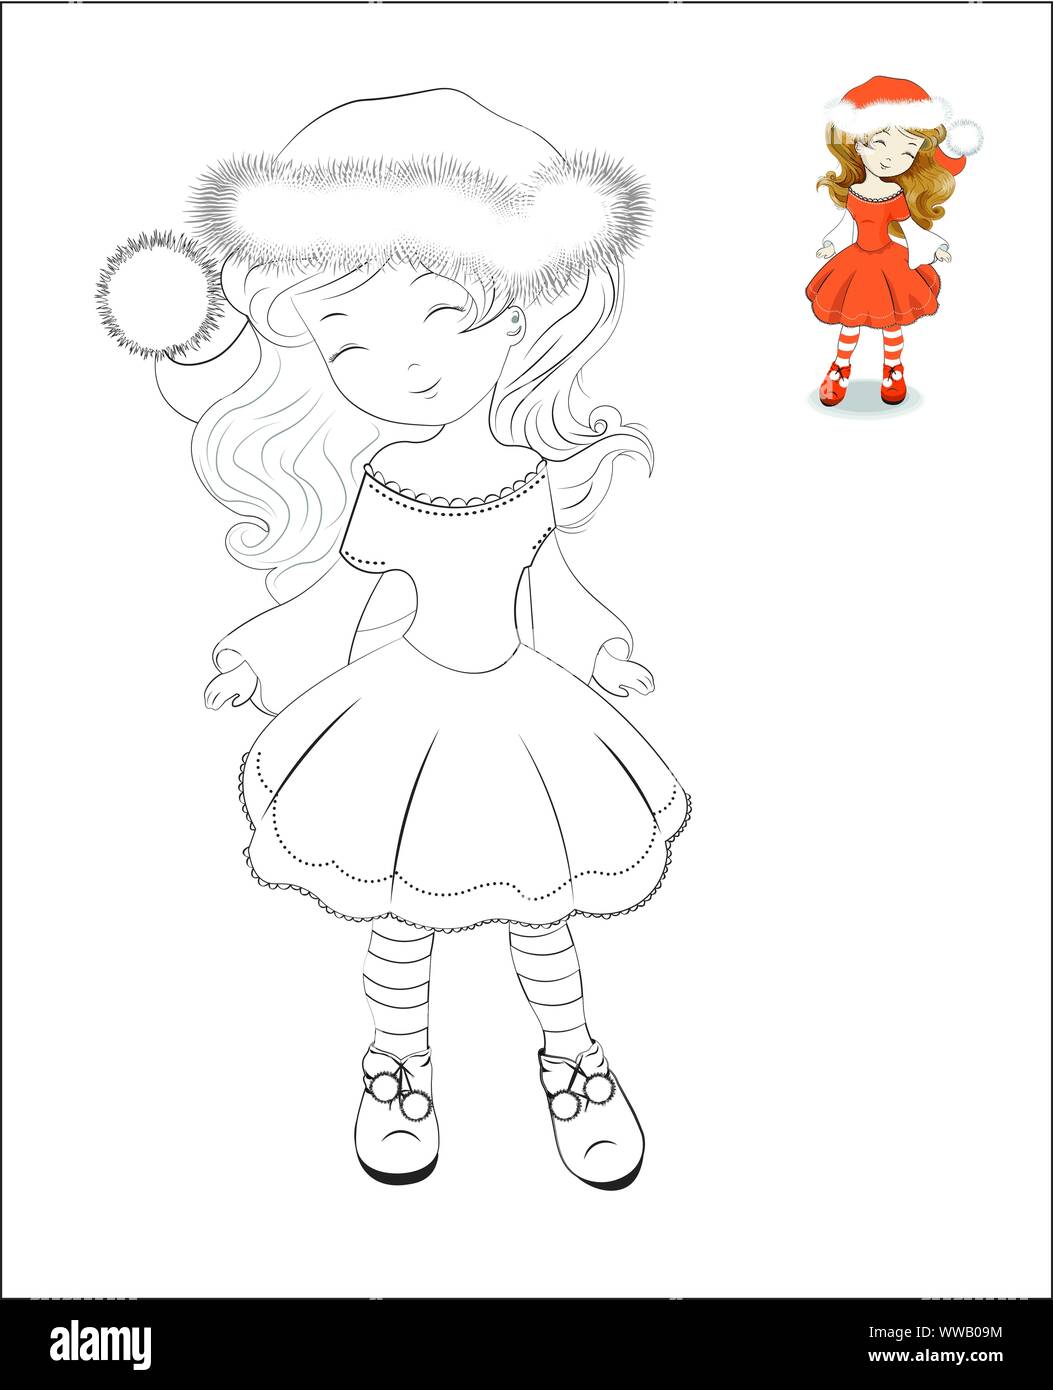 Libro para colorear de Navidad poco aislado chica en traje de Santa Claus,  con red hat y un pompon blanco. La imagen de estilo de dibujo a mano  alzada, puede utilizarse f